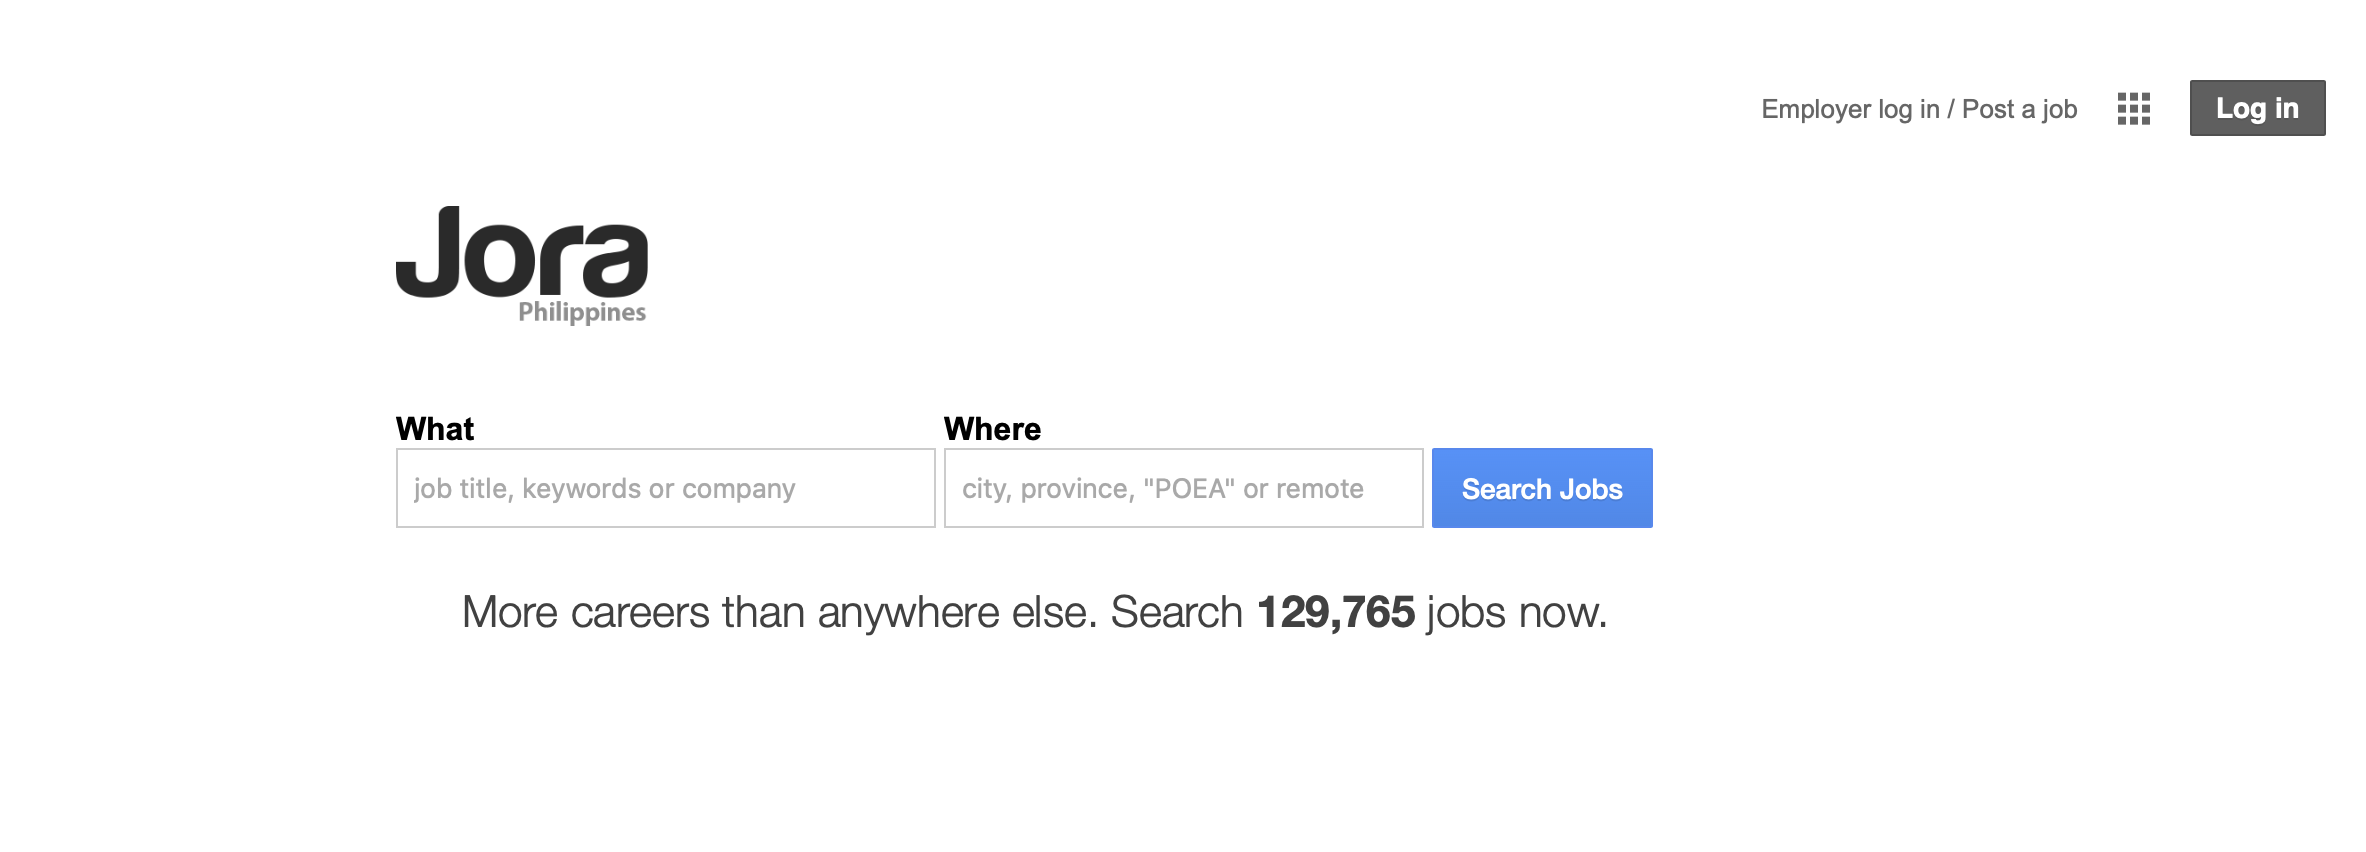 jora job search